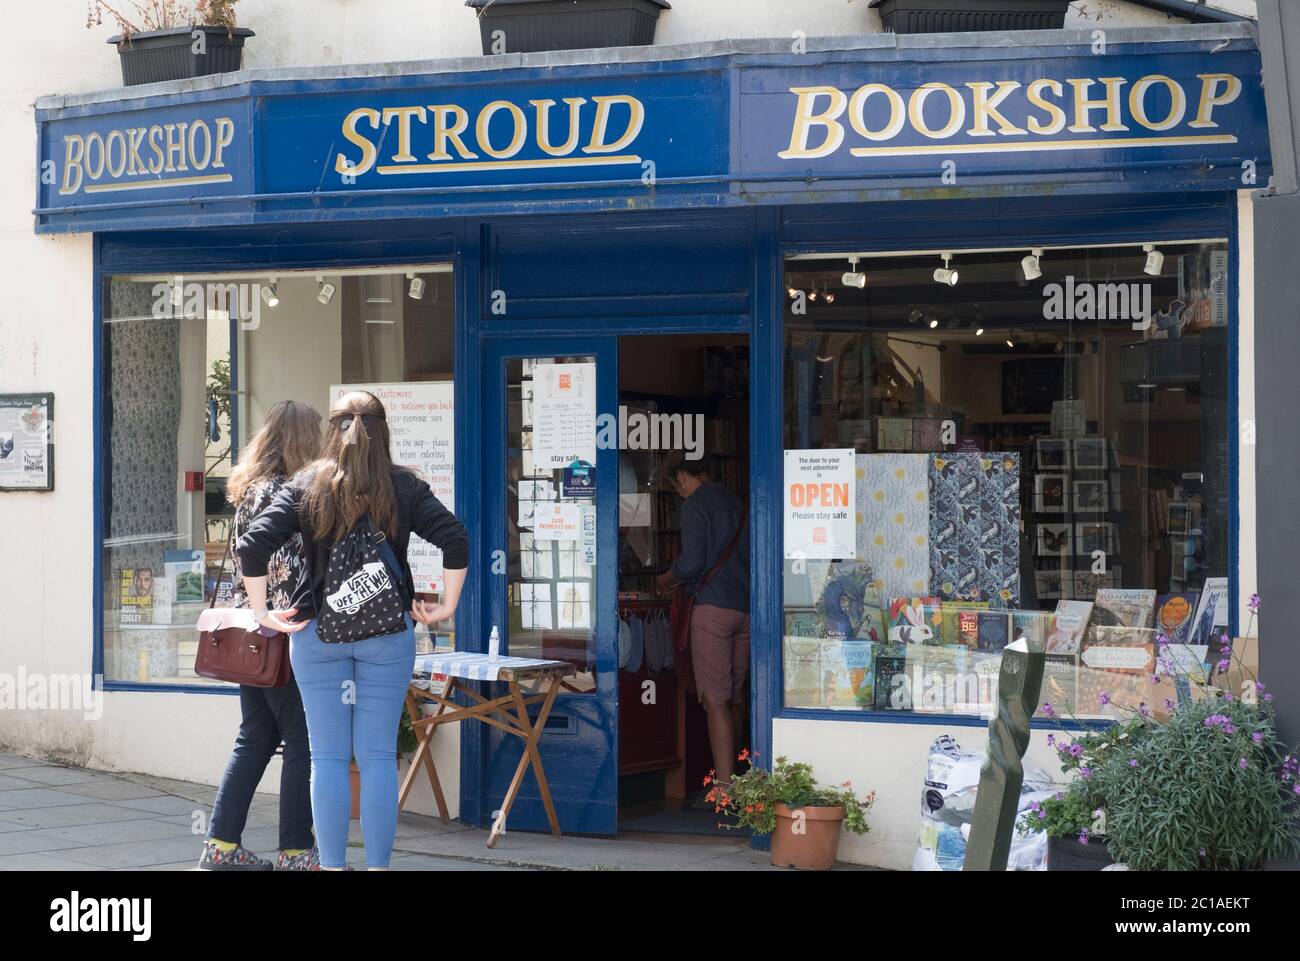 Stroud, Glos, Großbritannien. Juni 2019. Geschäfte, die nicht wesentliche Gegenstände verkaufen, dürfen zum ersten Mal seit 3 Monaten wieder geöffnet werden. Strenge Sicherheitsmaßnahmen und soziale Distanzierung sind unerlässlich und sind in dieser beliebten Stadt Cotswold zu sehen.abgebildet ist der Stroud-Buchhändler Stockfoto